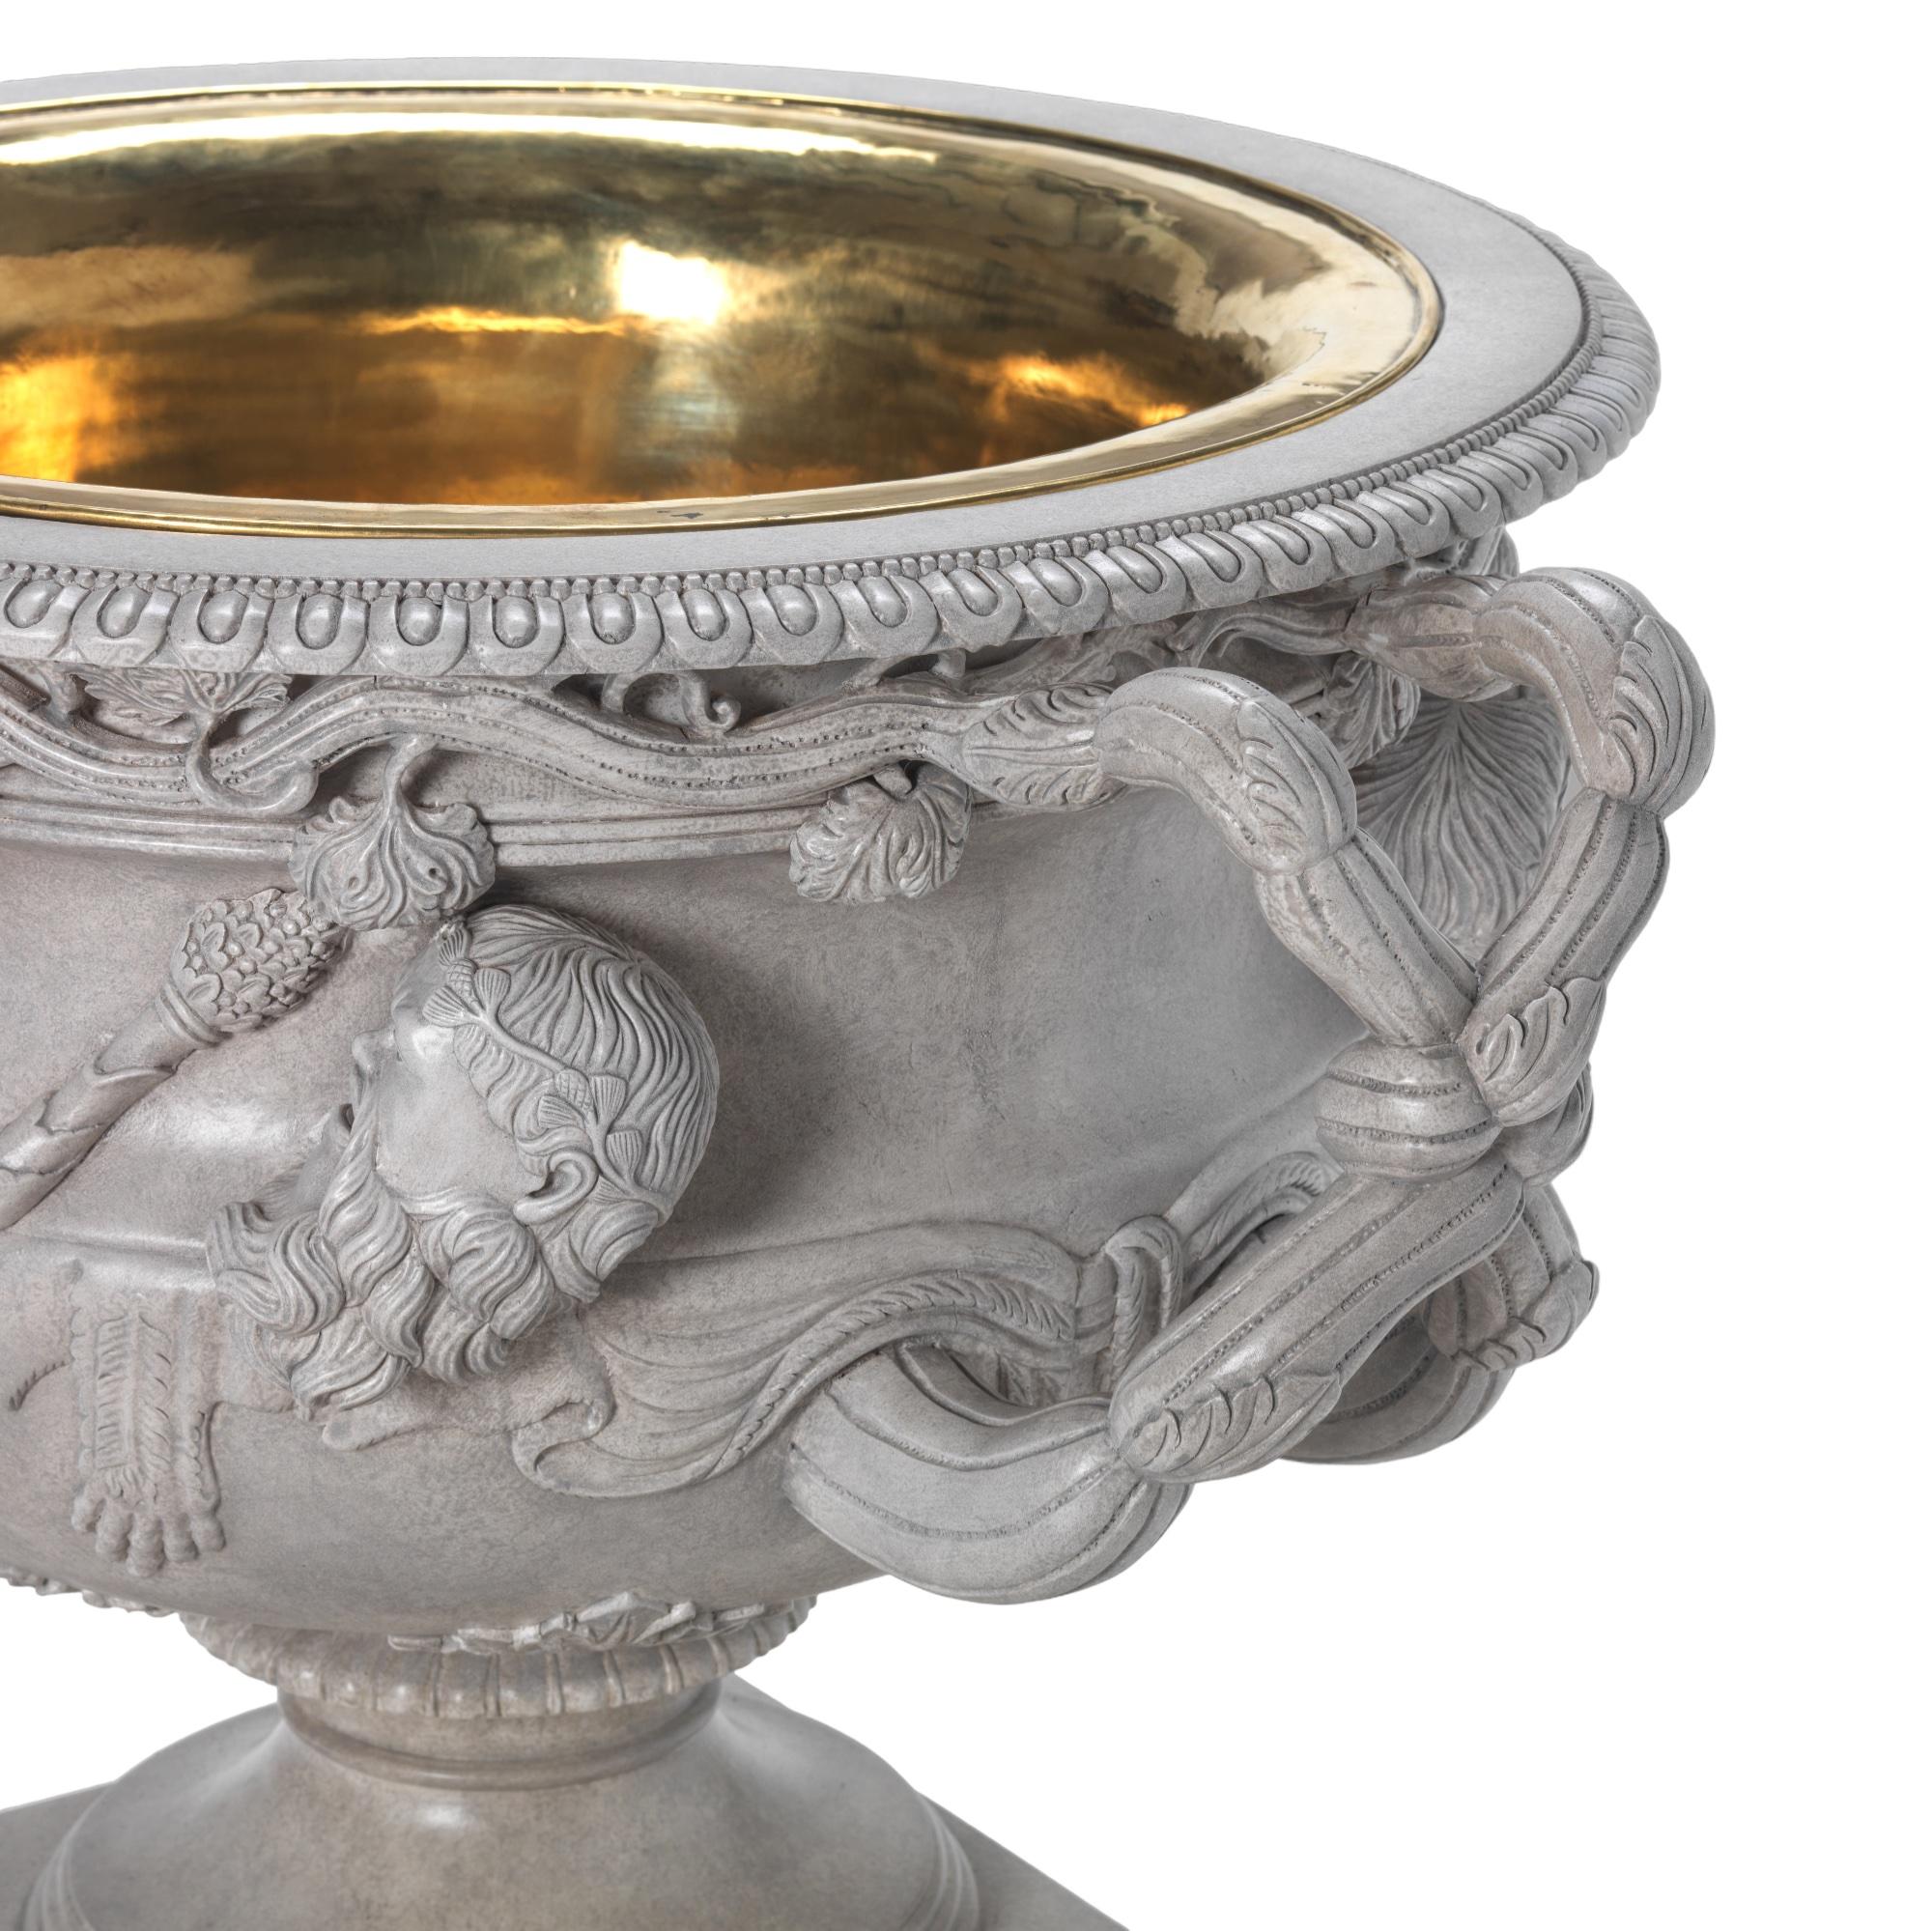 Eine schöne geschnitzte Holzkopie der Warwick-Vase. Die Originalvase wurde 1771 von Gavin Hamilton in der Hadrian-Villa in Tivoli ausgegraben. Hamilton verkaufte es dann an den 2. Earl of Warwick, daher der Name.
Diese Vase ist hervorragend in